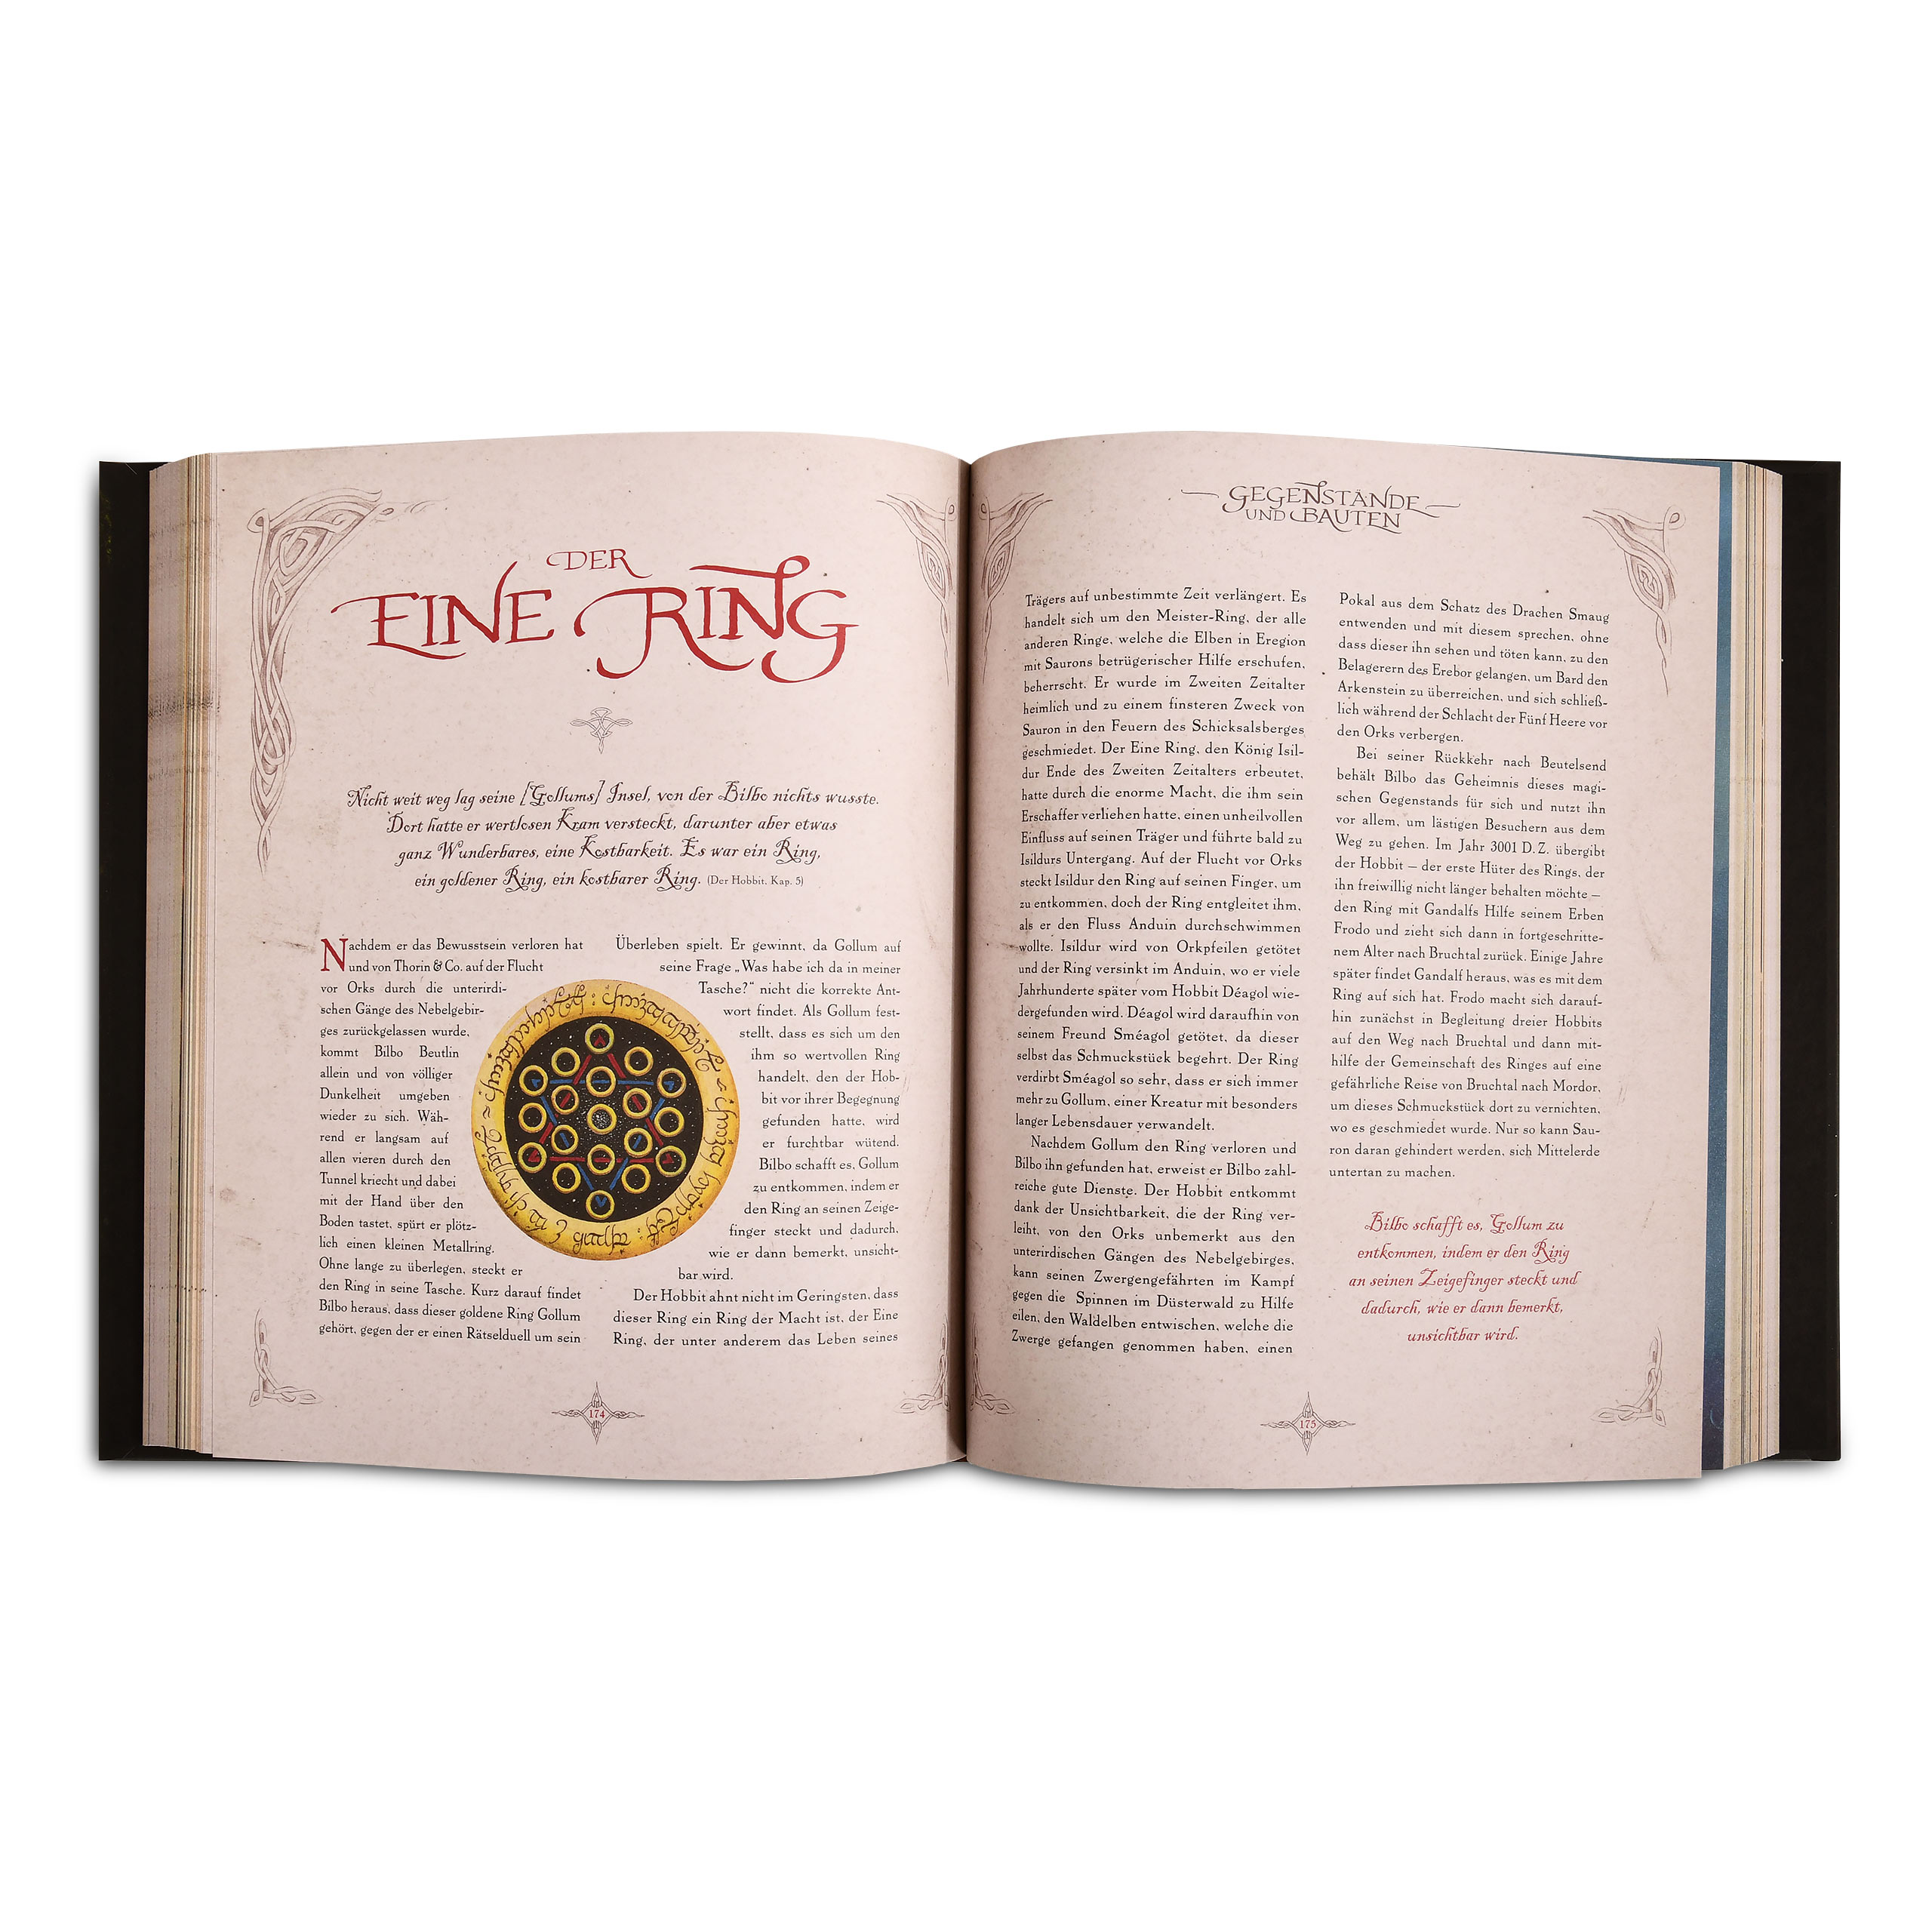 Le légendaire de Tolkien - La grande encyclopédie du Hobbit